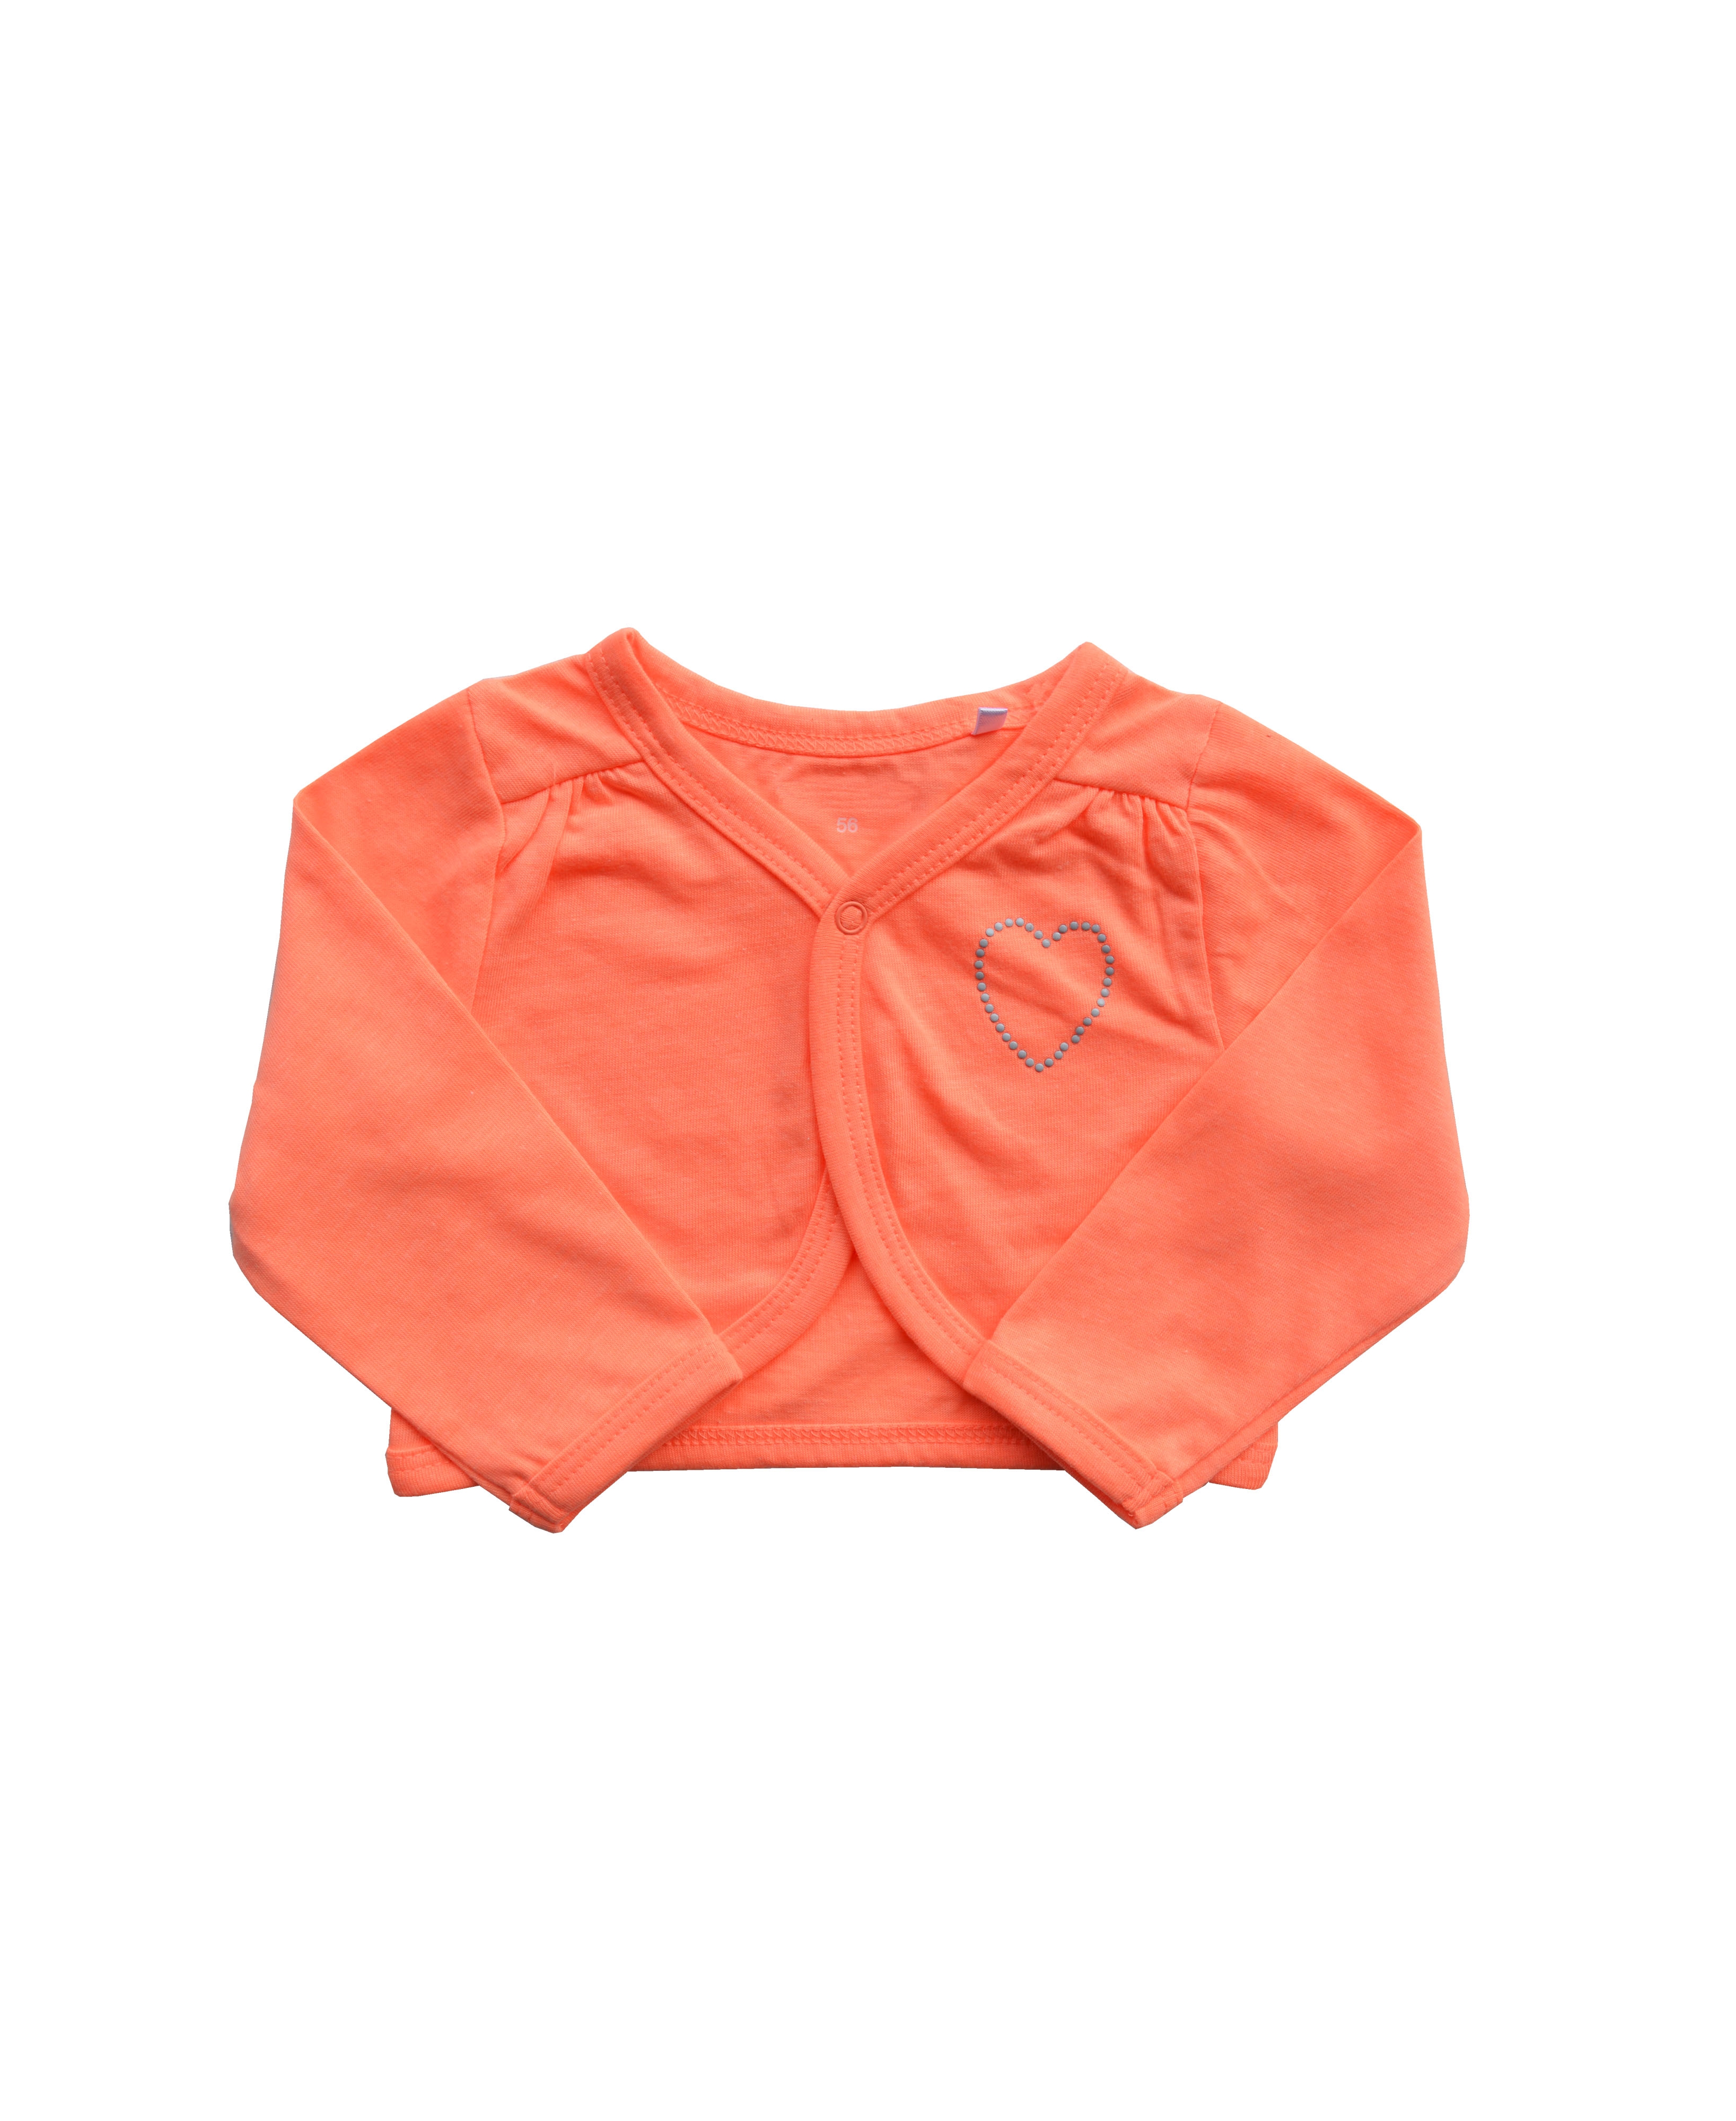 Babeez | Girls Orange Bolero with Heart of stones (95% Cotton 5%Elasthan) undefined